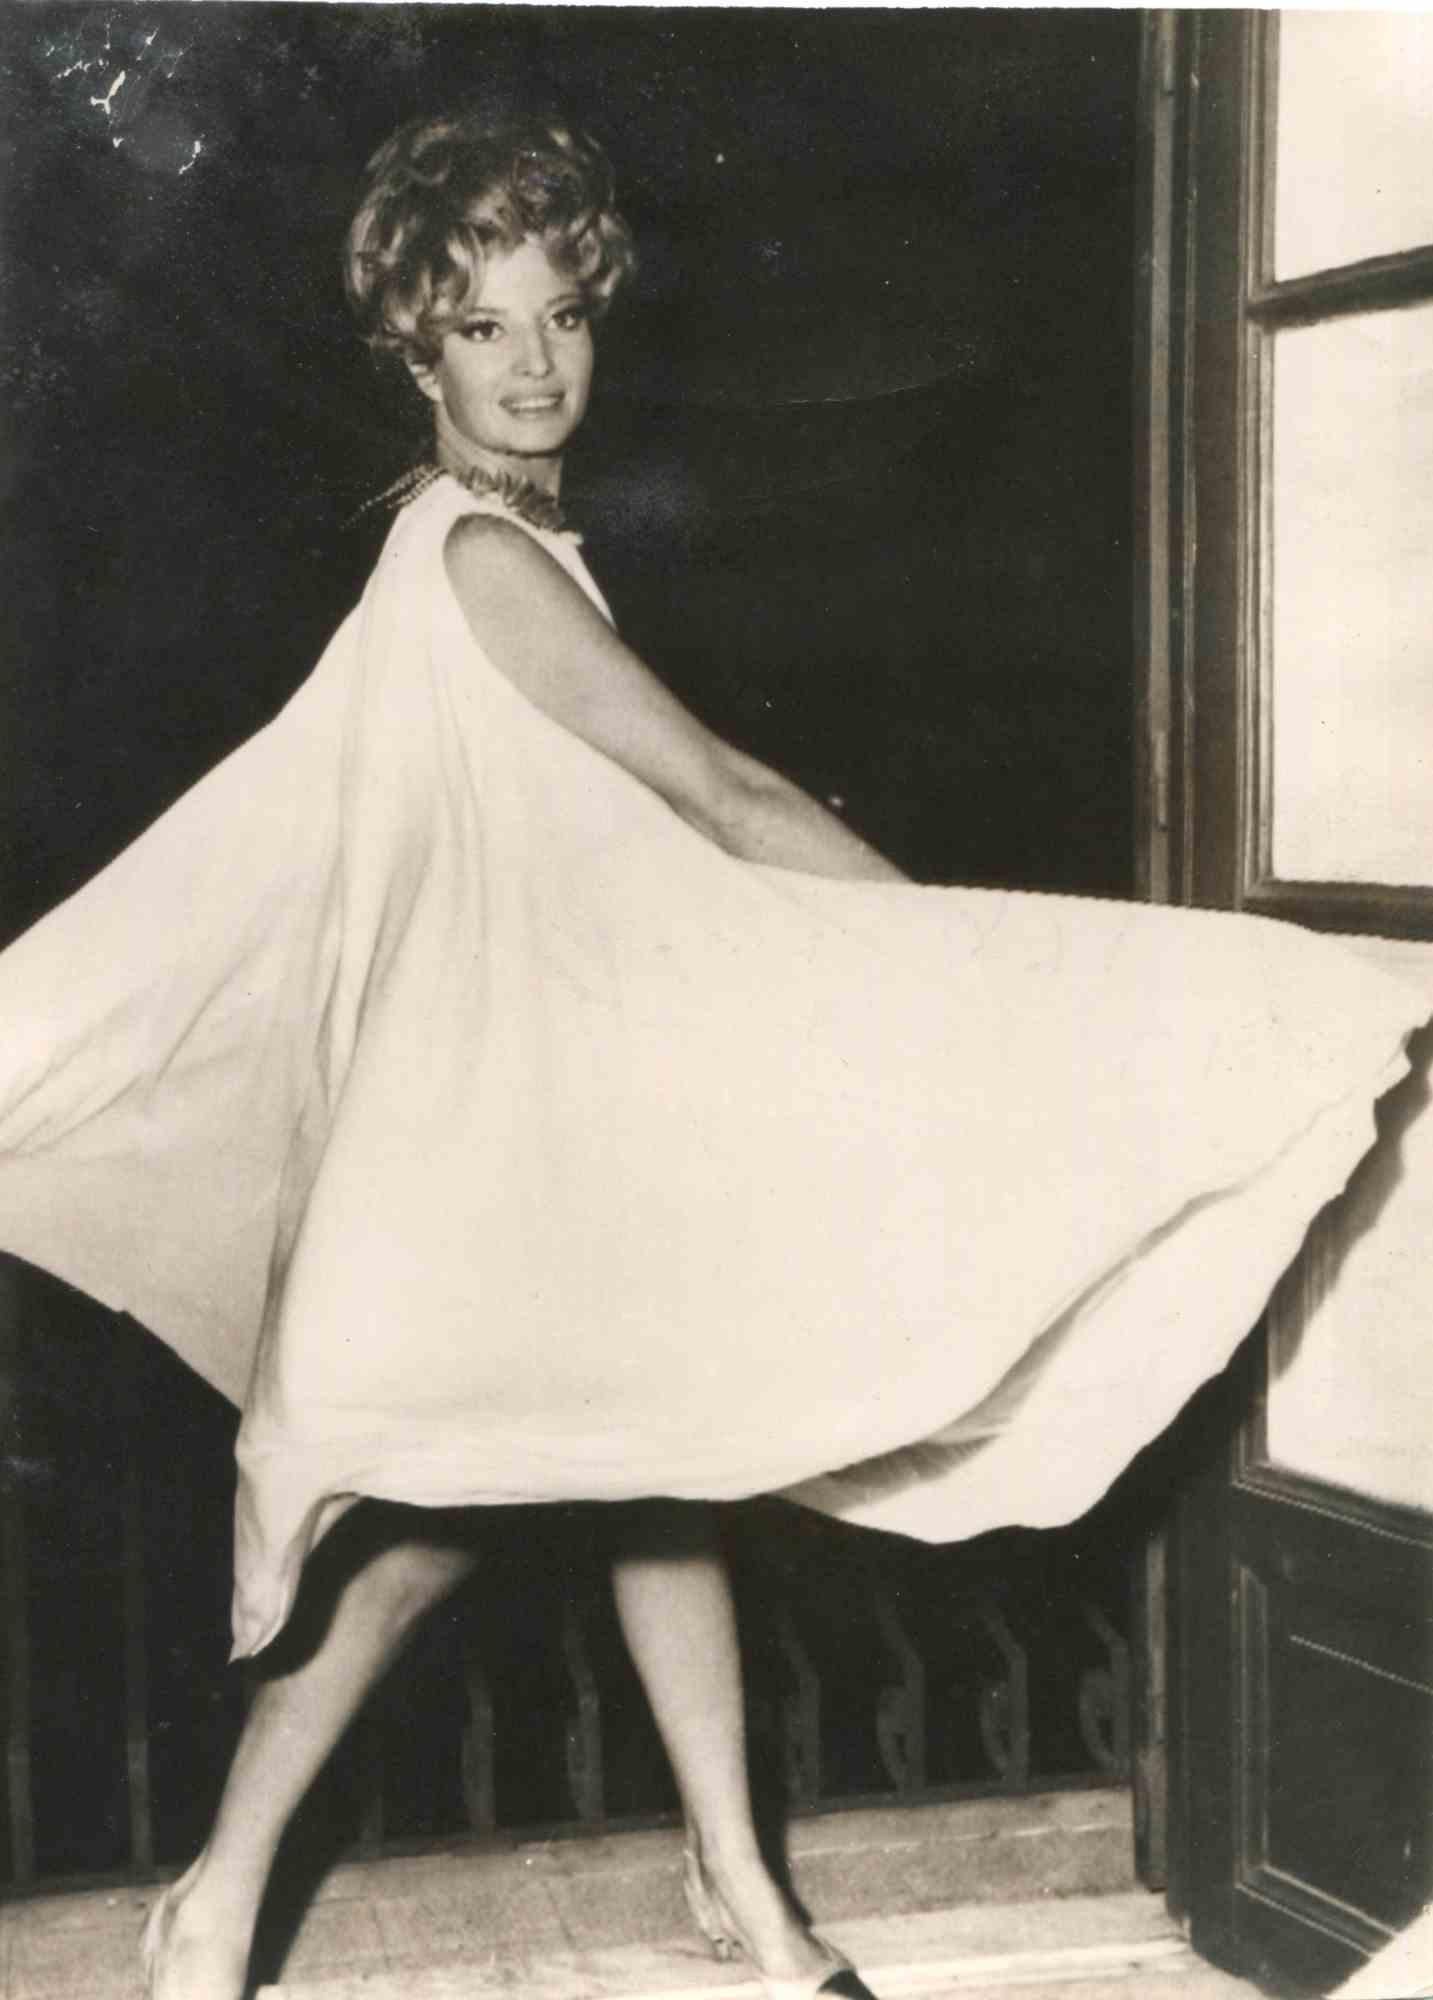 Portrait vintage de Monica Vitti est une photo vintage en noir et blanc réalisée dans les années 1960 par l'Agenzia ANSA.

Bon état, à l'exception de signes d'usure dans la marge supérieure gauche.

Monica Vitti est née à Rome le 3 novembre 1931.